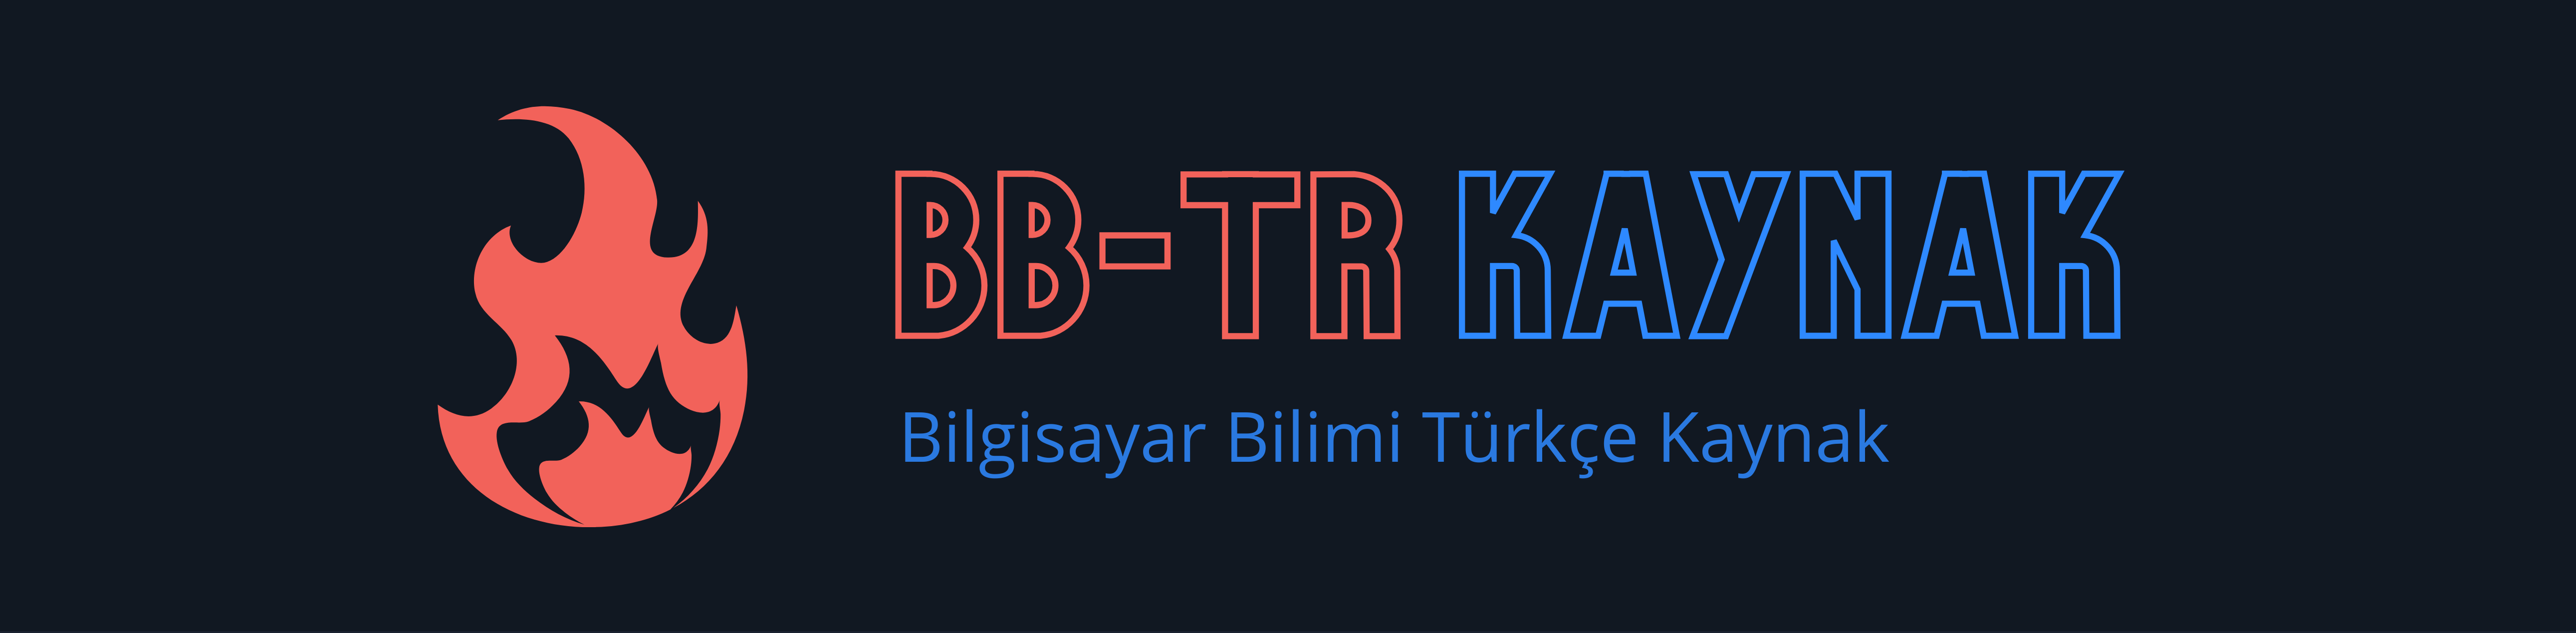 Bilgisayar Bilimi Türkçe Kaynak